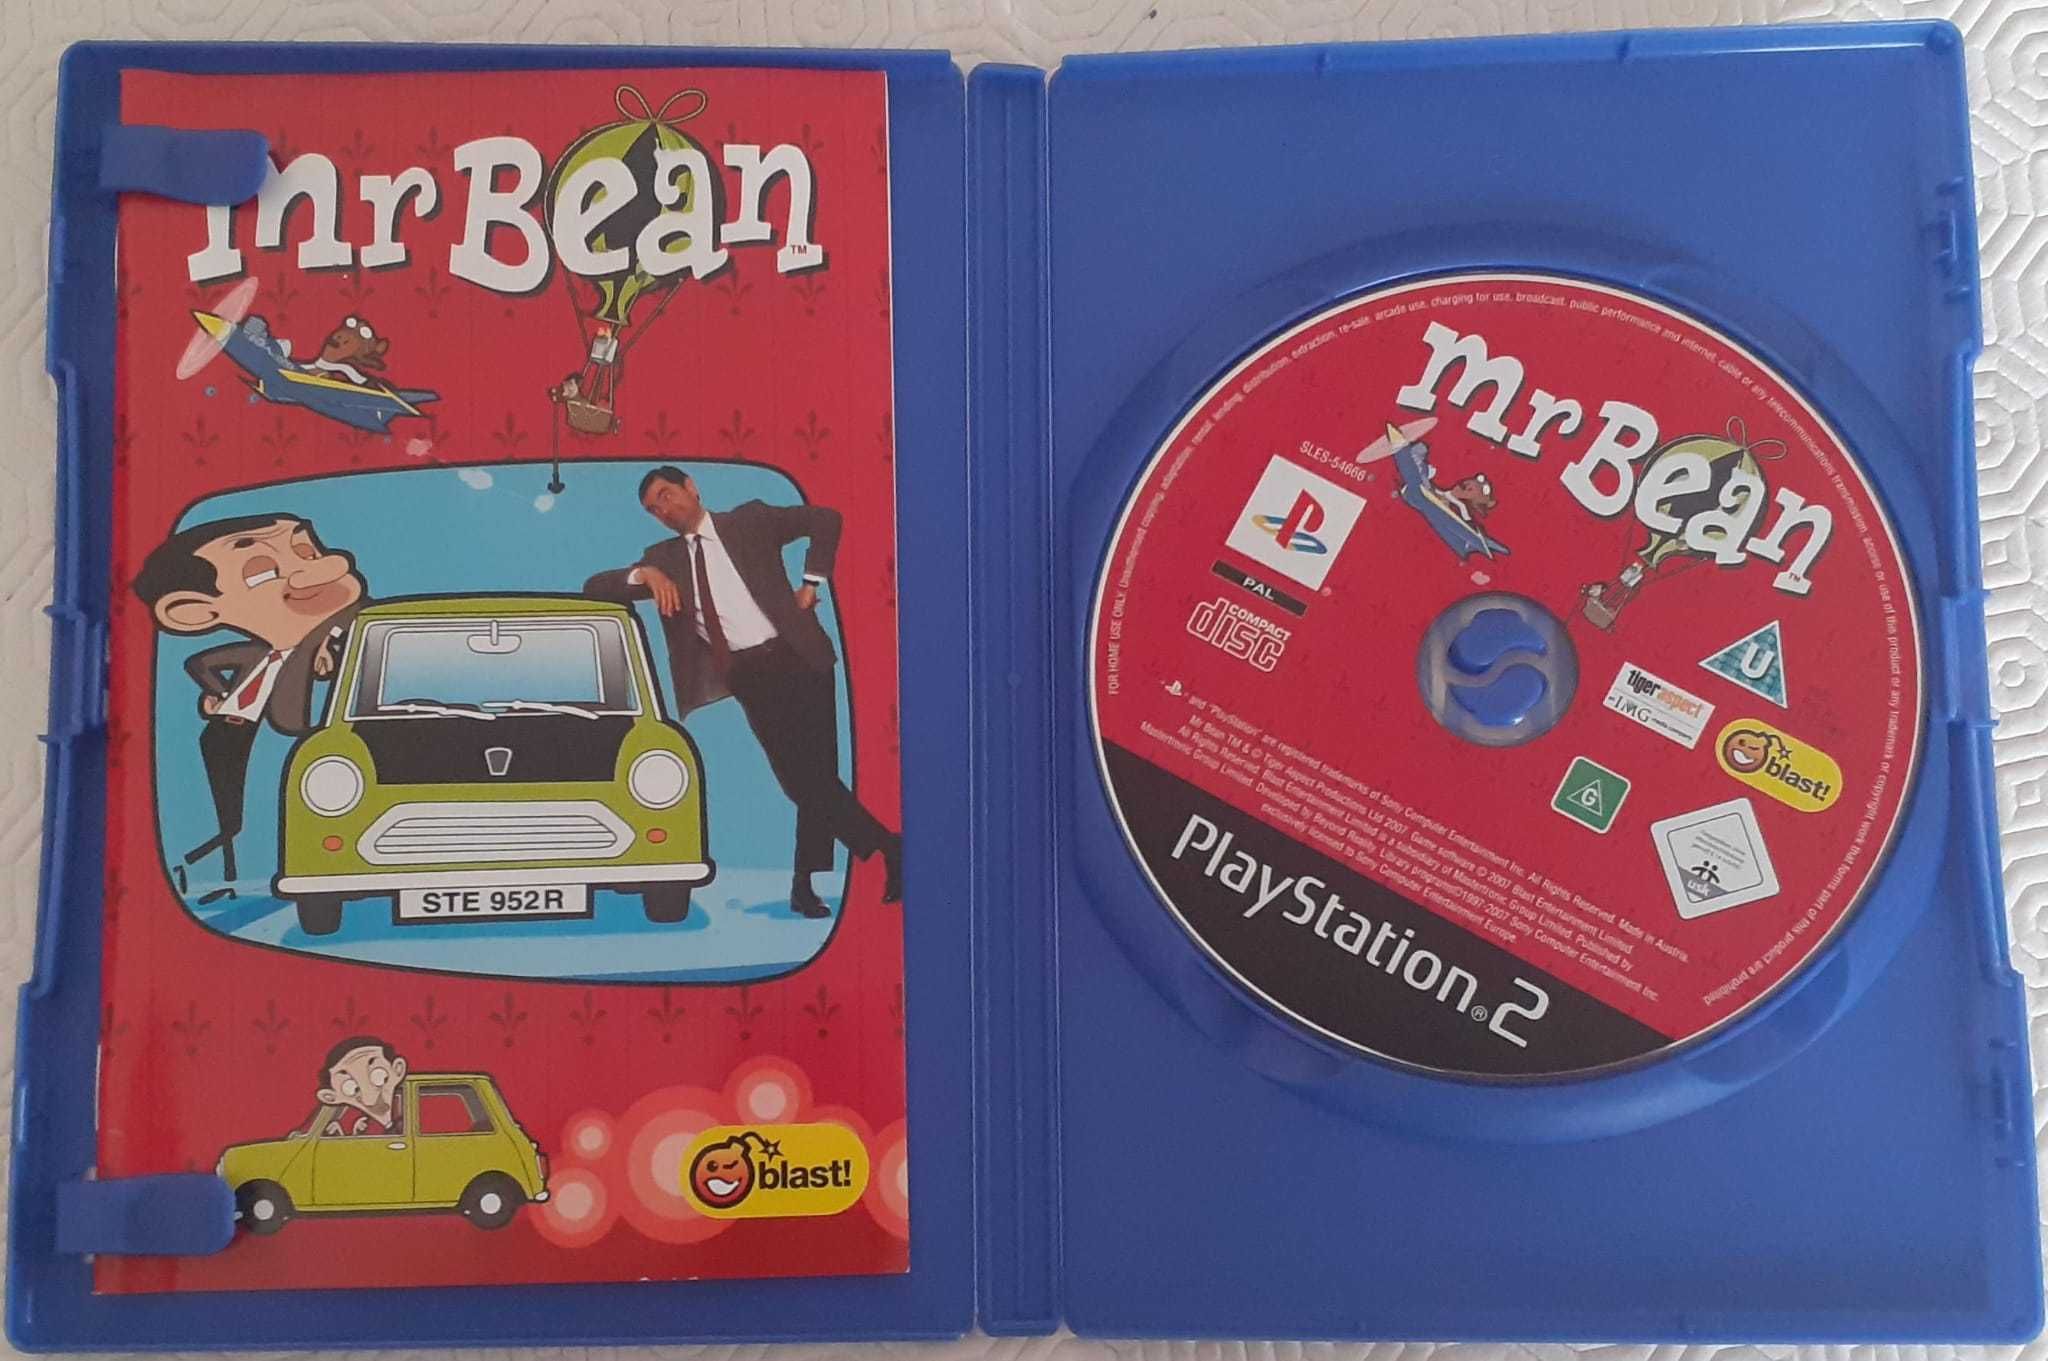 Plasystation 2 Mr Bean